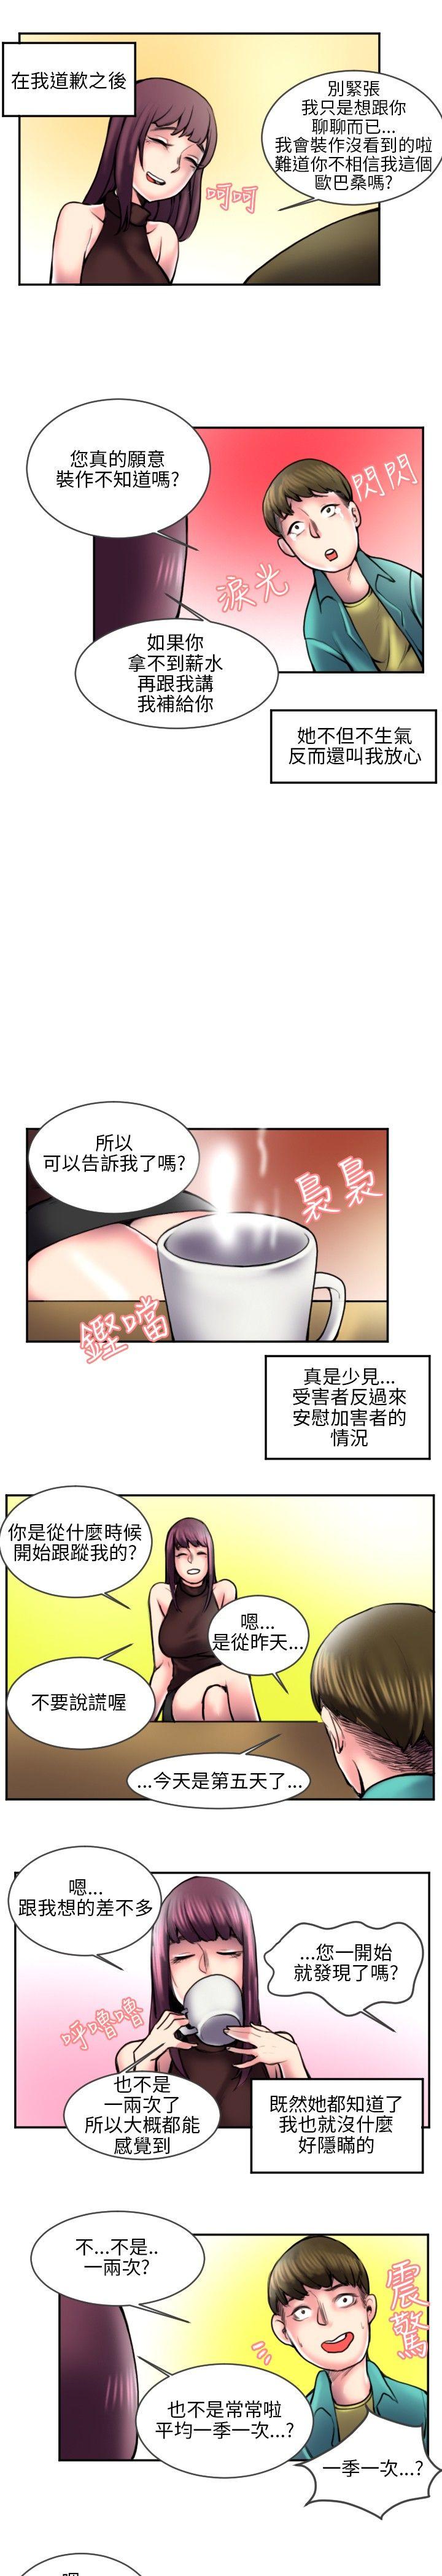 韩国污漫画 秘密Story 打工仔钓人妻(2) 4